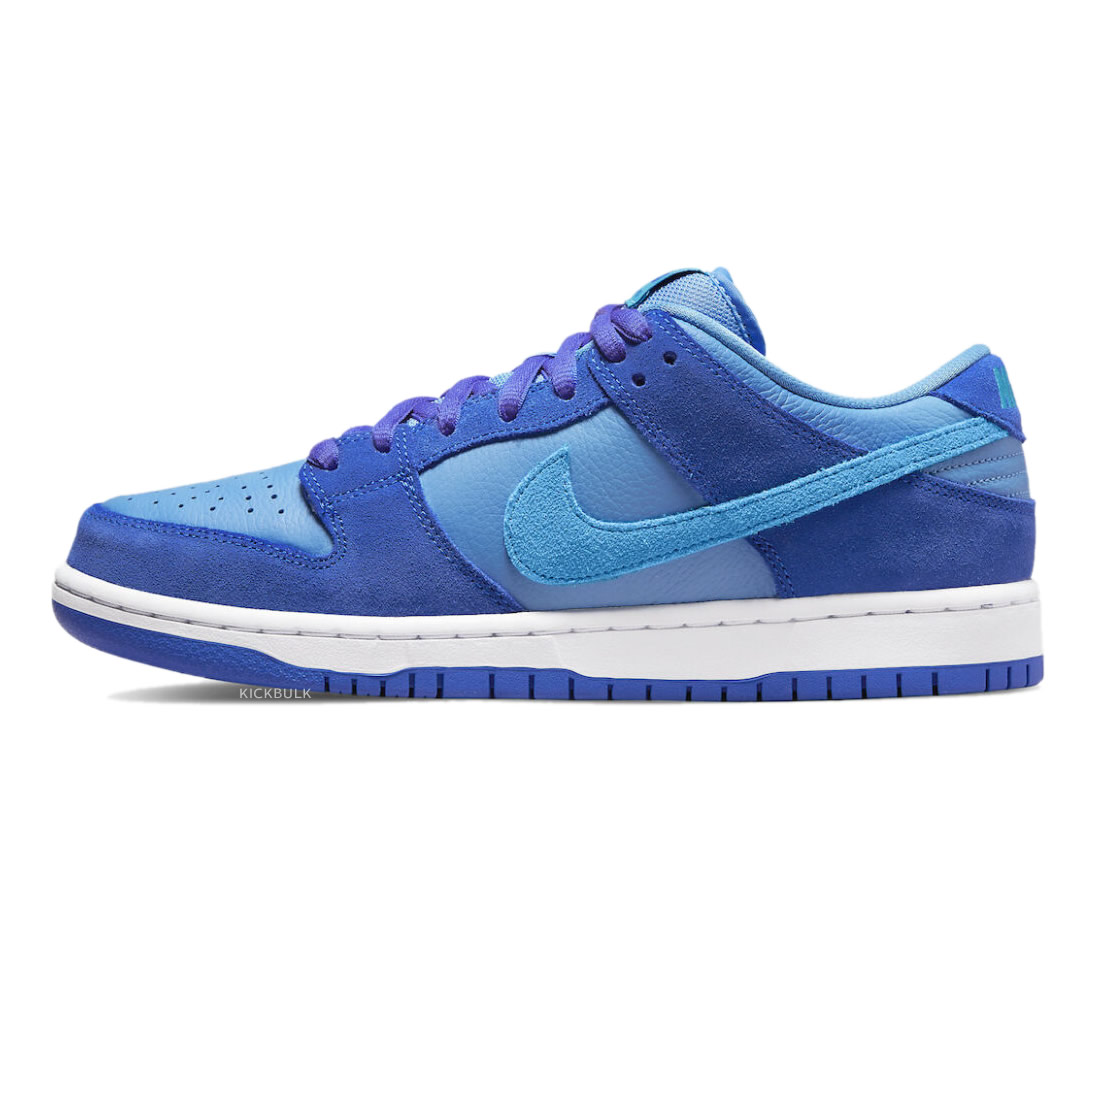 Nike Dunk Low Pro Sb Fruity Pack Blue Raspberry Dm0807 400 1 - www.kickbulk.co